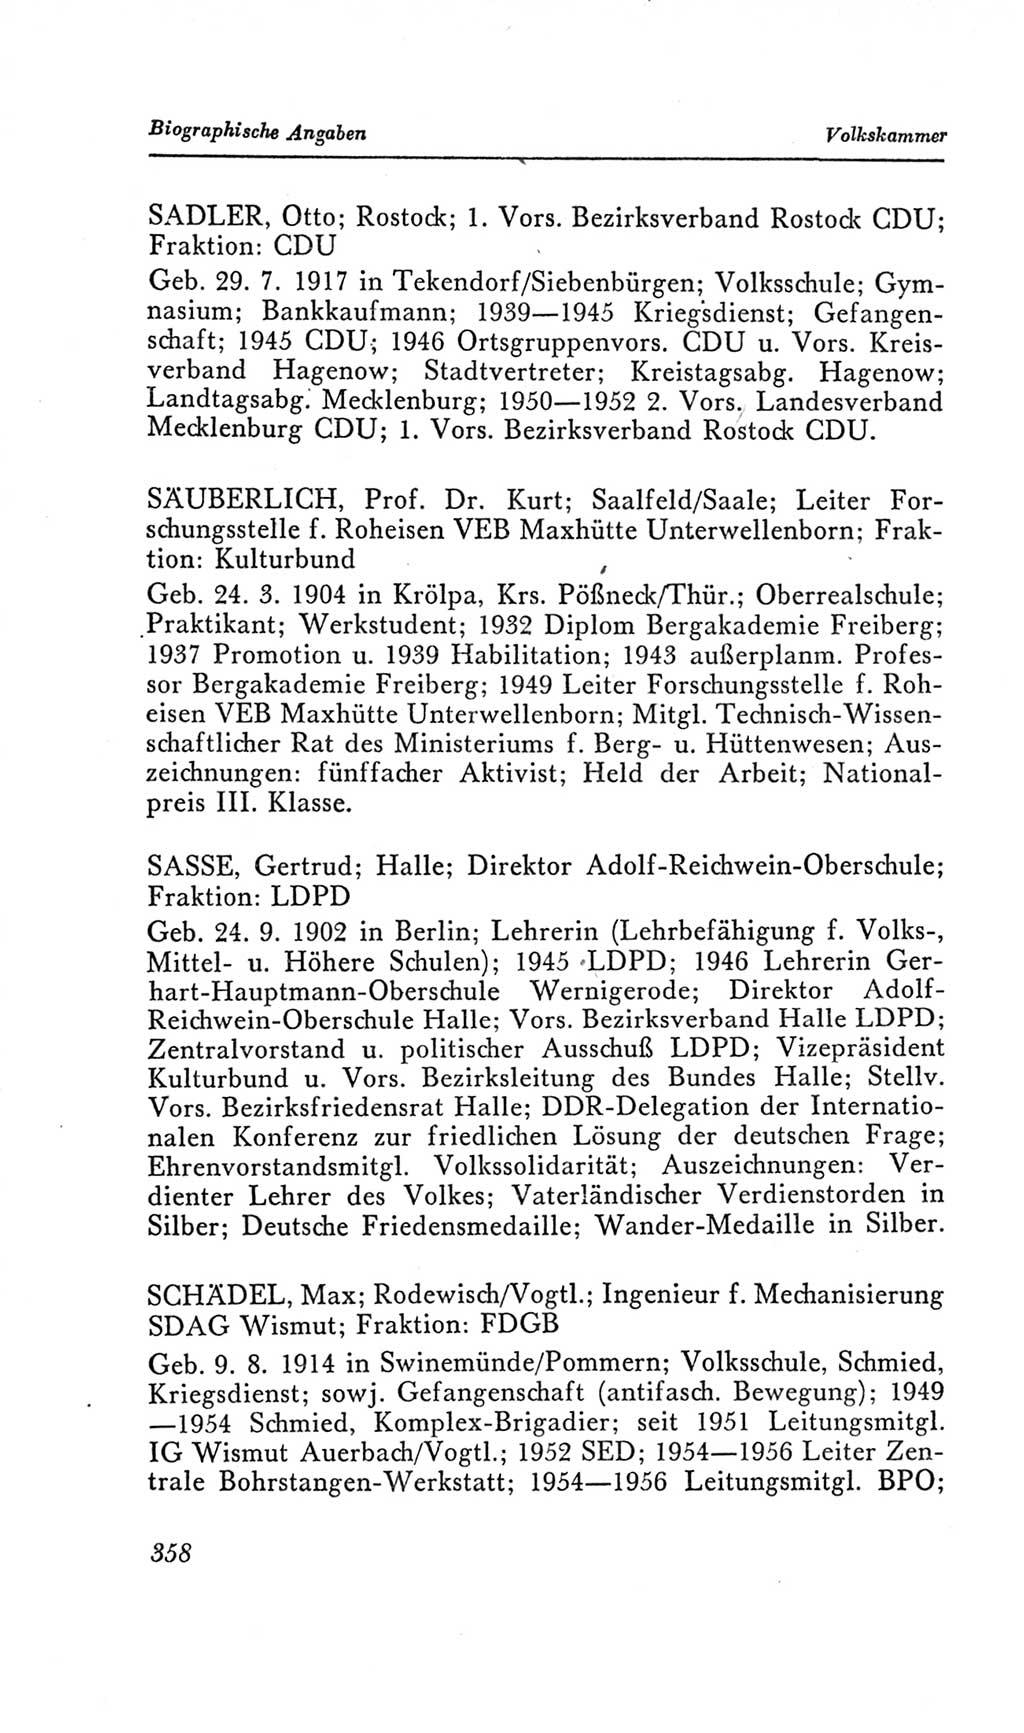 Handbuch der Volkskammer (VK) der Deutschen Demokratischen Republik (DDR), 2. Wahlperiode 1954-1958, Seite 358 (Hdb. VK. DDR, 2. WP. 1954-1958, S. 358)